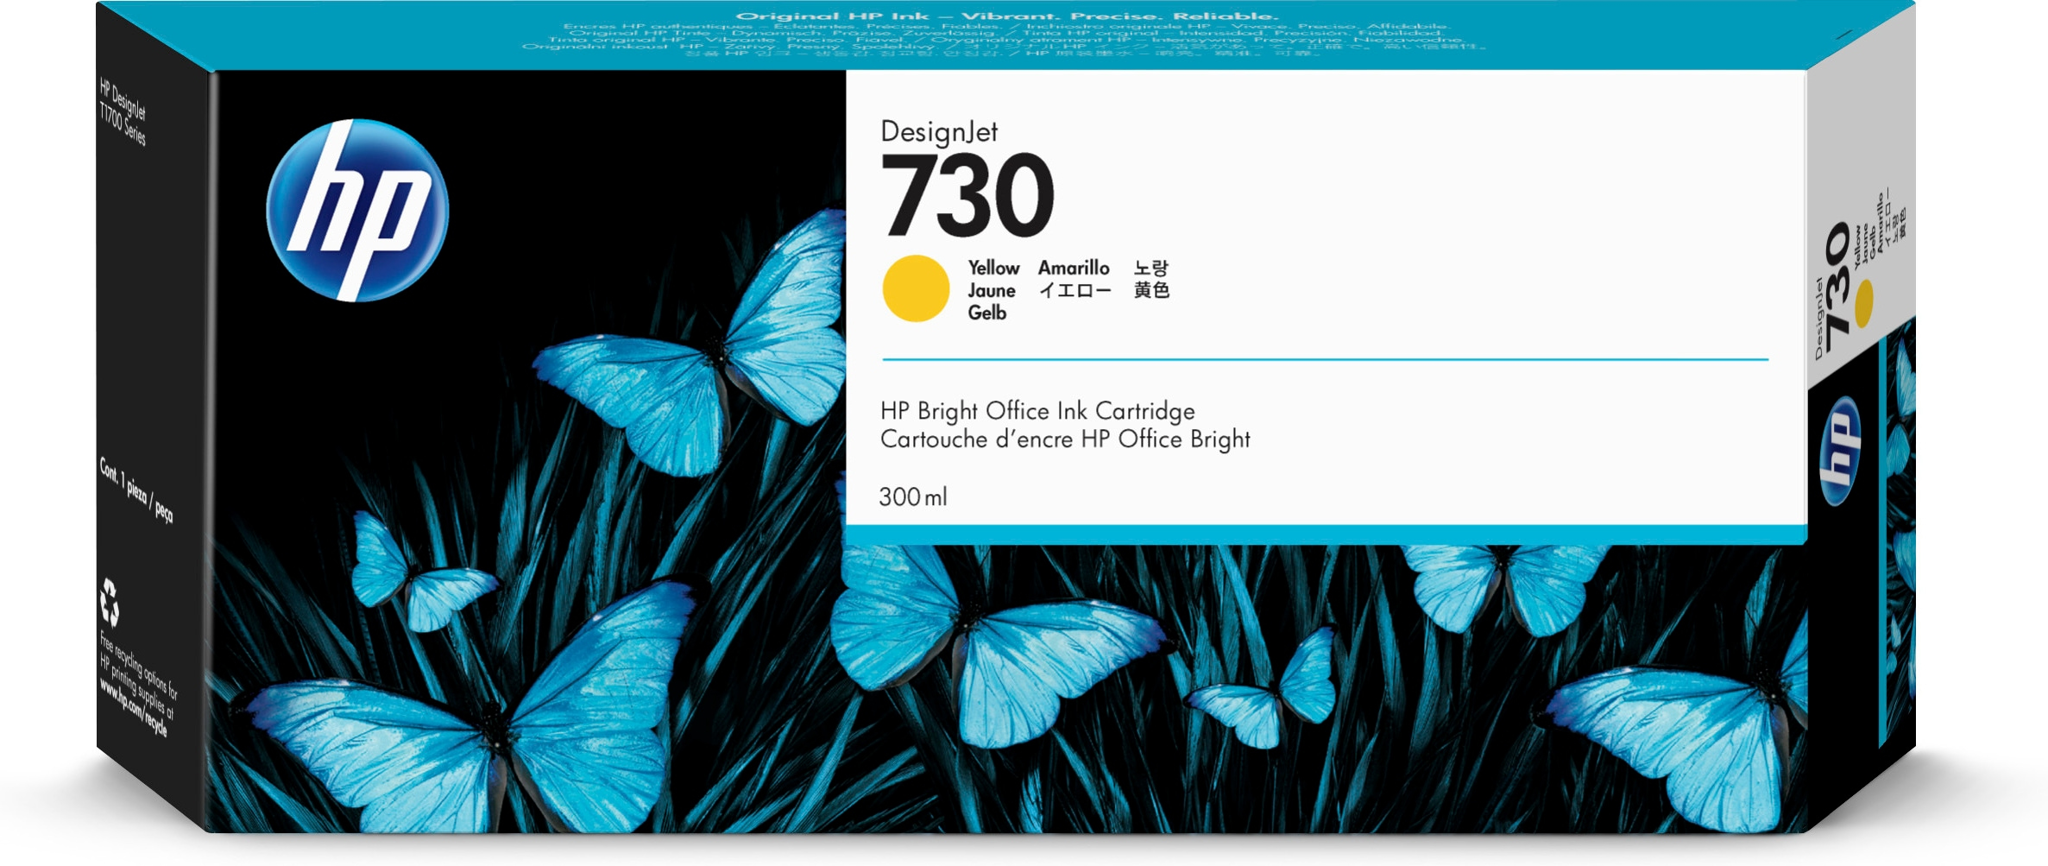 Bild von HP 730 DesignJet Druckerpatrone Gelb 300 ml - Tinte auf Farbstoffbasis - 300 ml - 1 Stück(e)